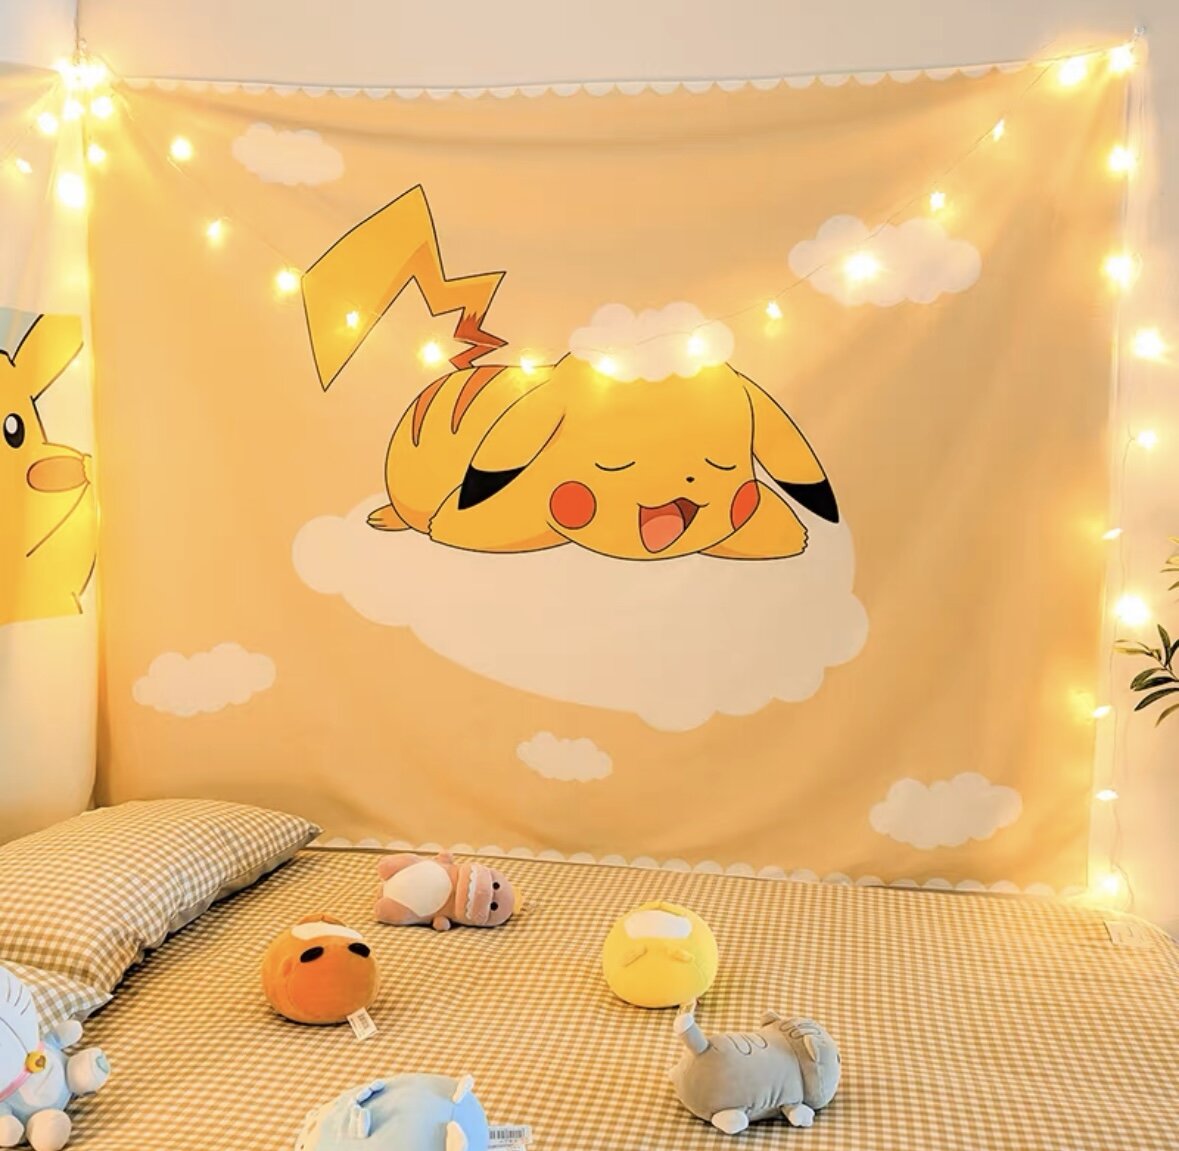 Väggdekoration sovande Pikachu, med ljusslinga